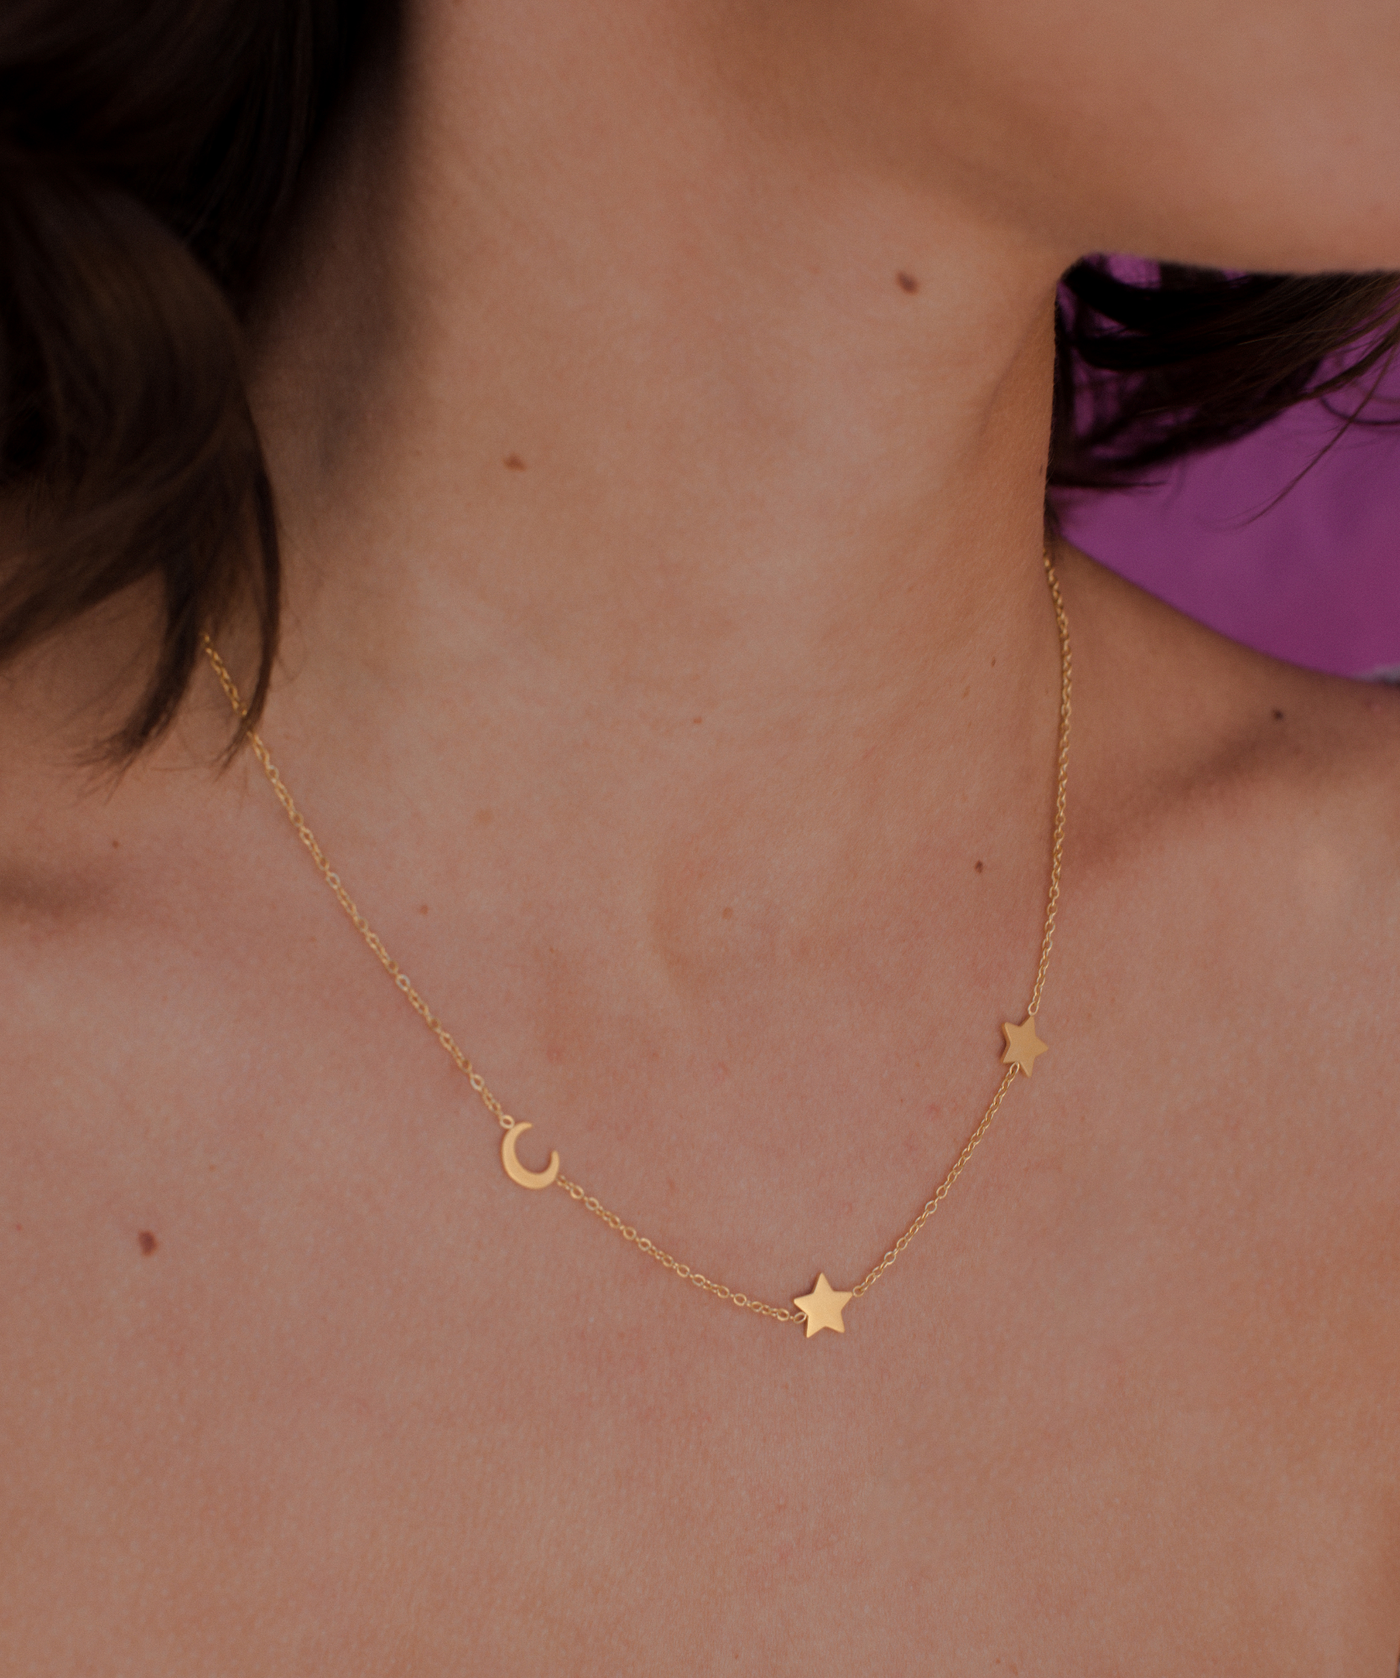 Junge Frau trägt Gold Kette mit minimalistischem Mond und Stern Anhänger.